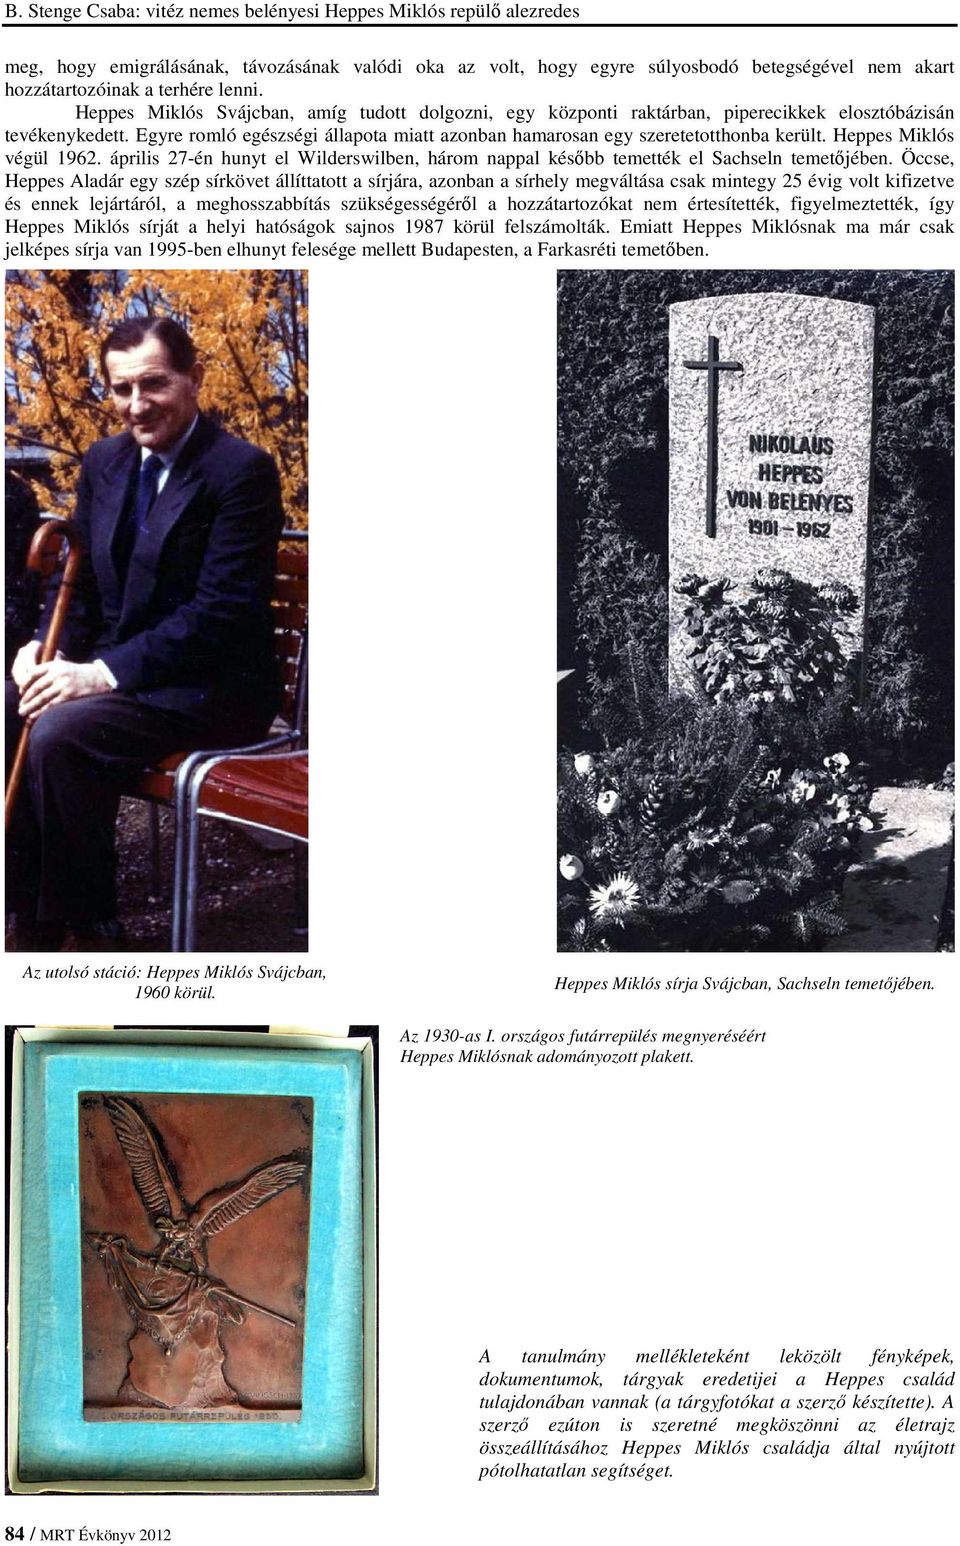 Heppes Miklós végül 1962. április 27-én hunyt el Wilderswilben, három nappal később temették el Sachseln temetőjében.